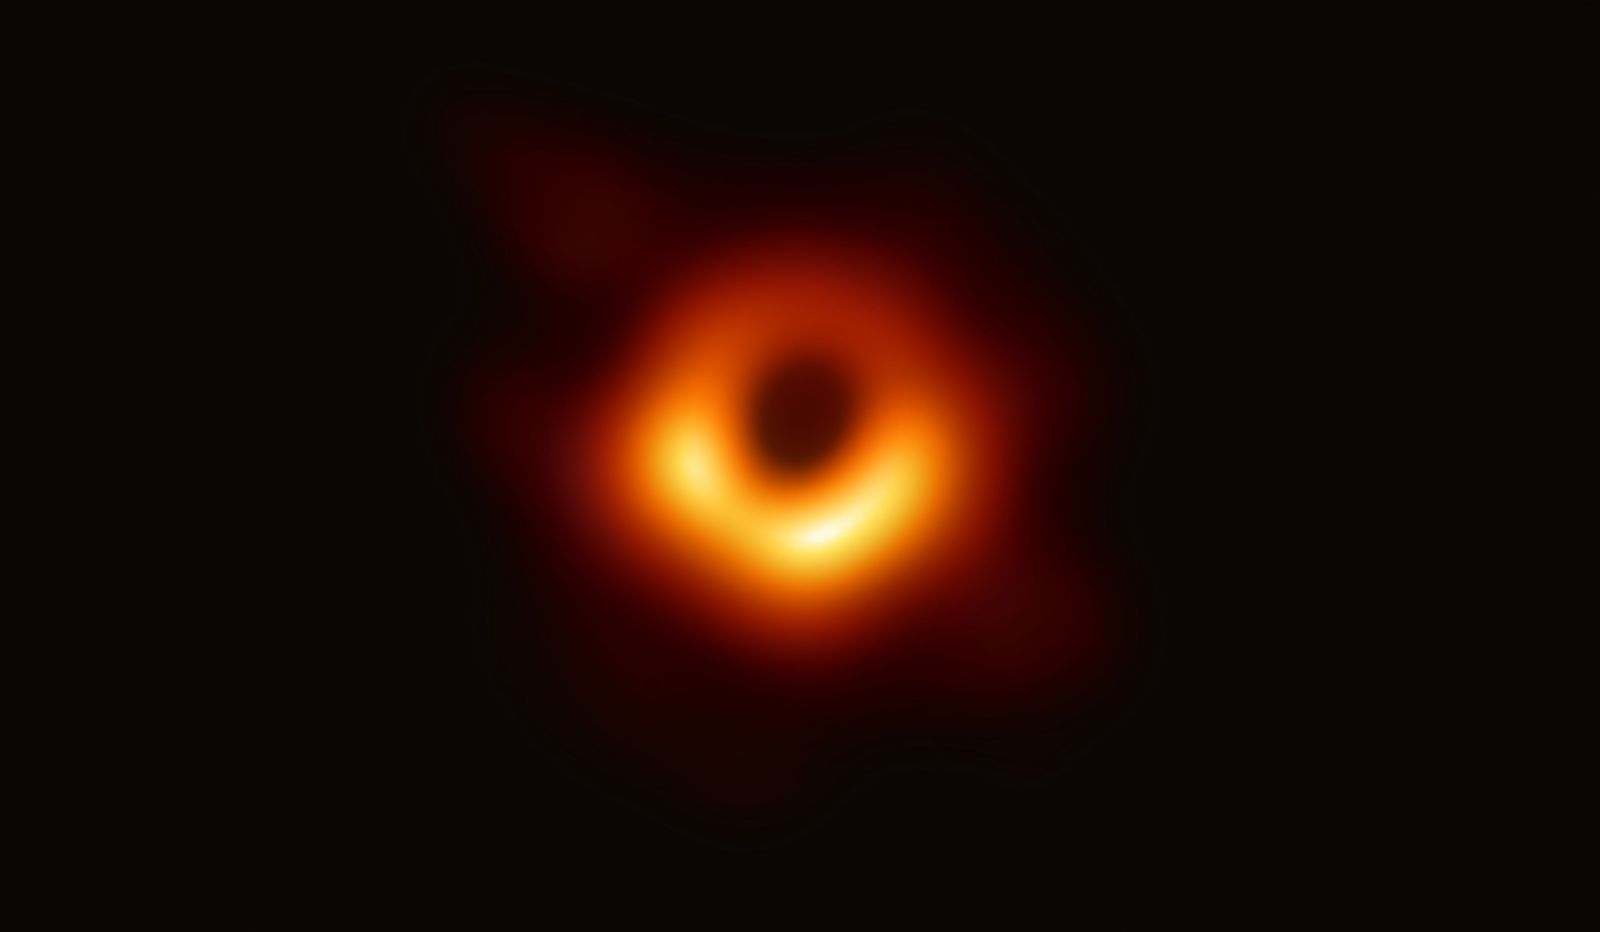 Toto je první fotografie černé díry v historii. Dokazuje jejich samotnou existenci i Einsteinovy teorie